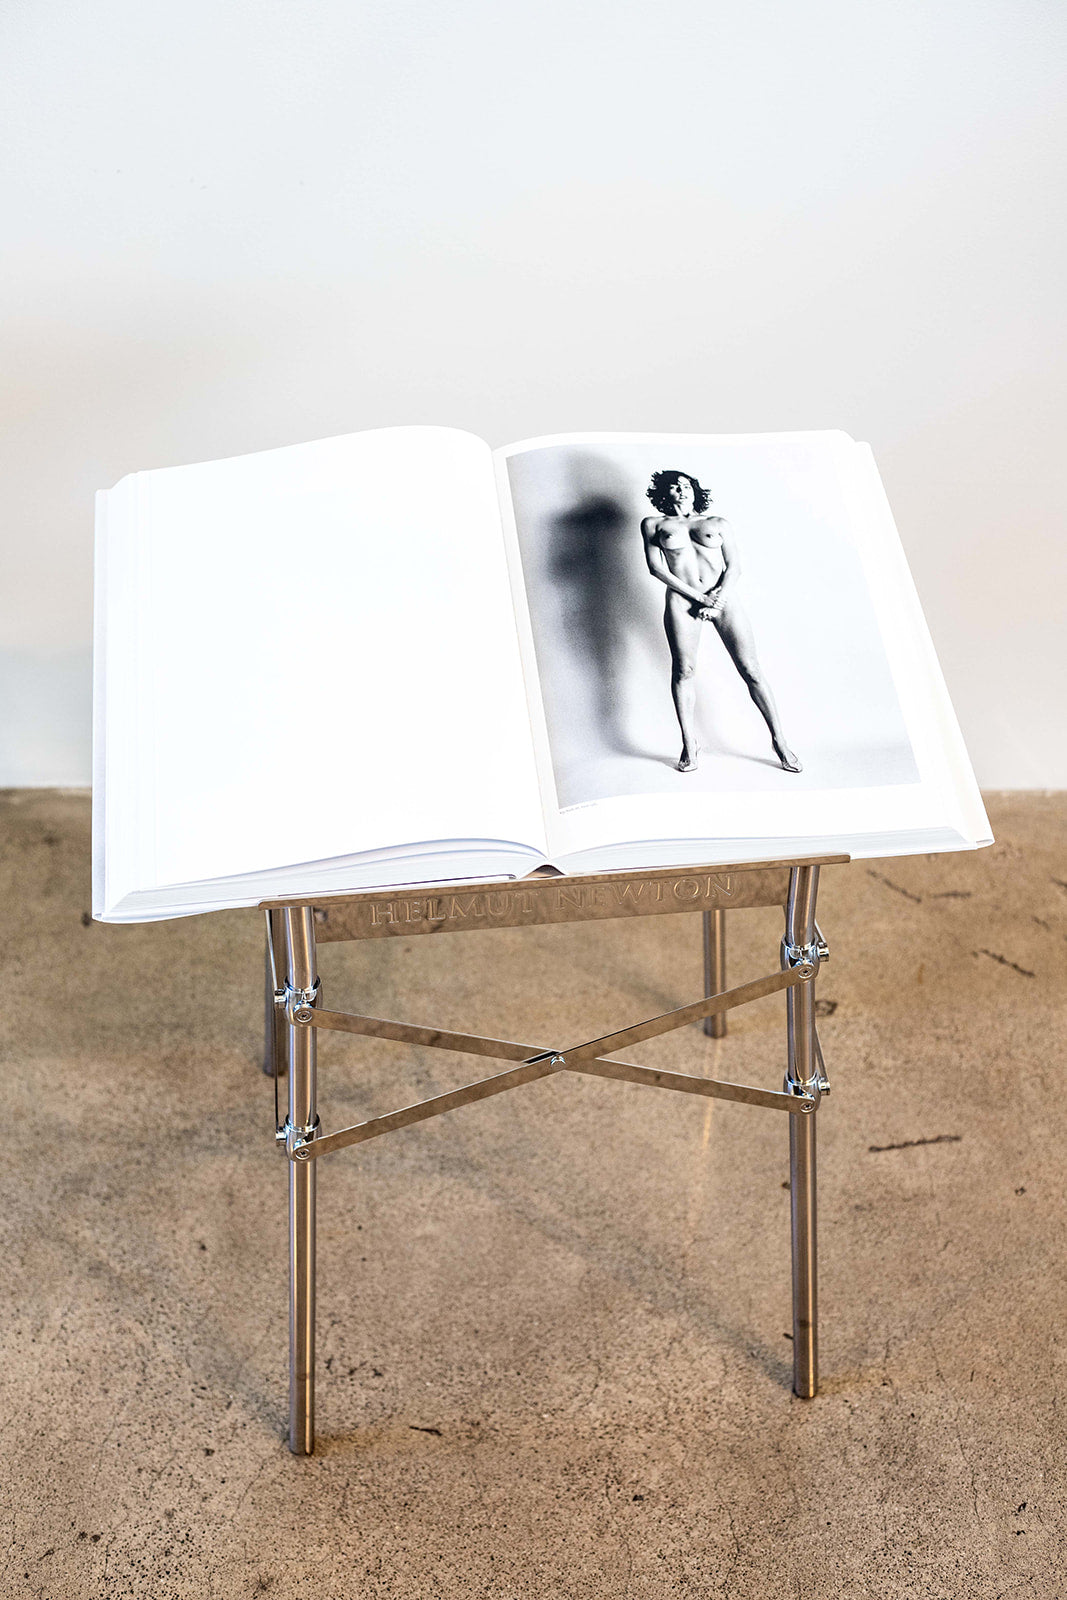 Helmut Newton (Baby SUMO) by TASCHEN – Artware Editions